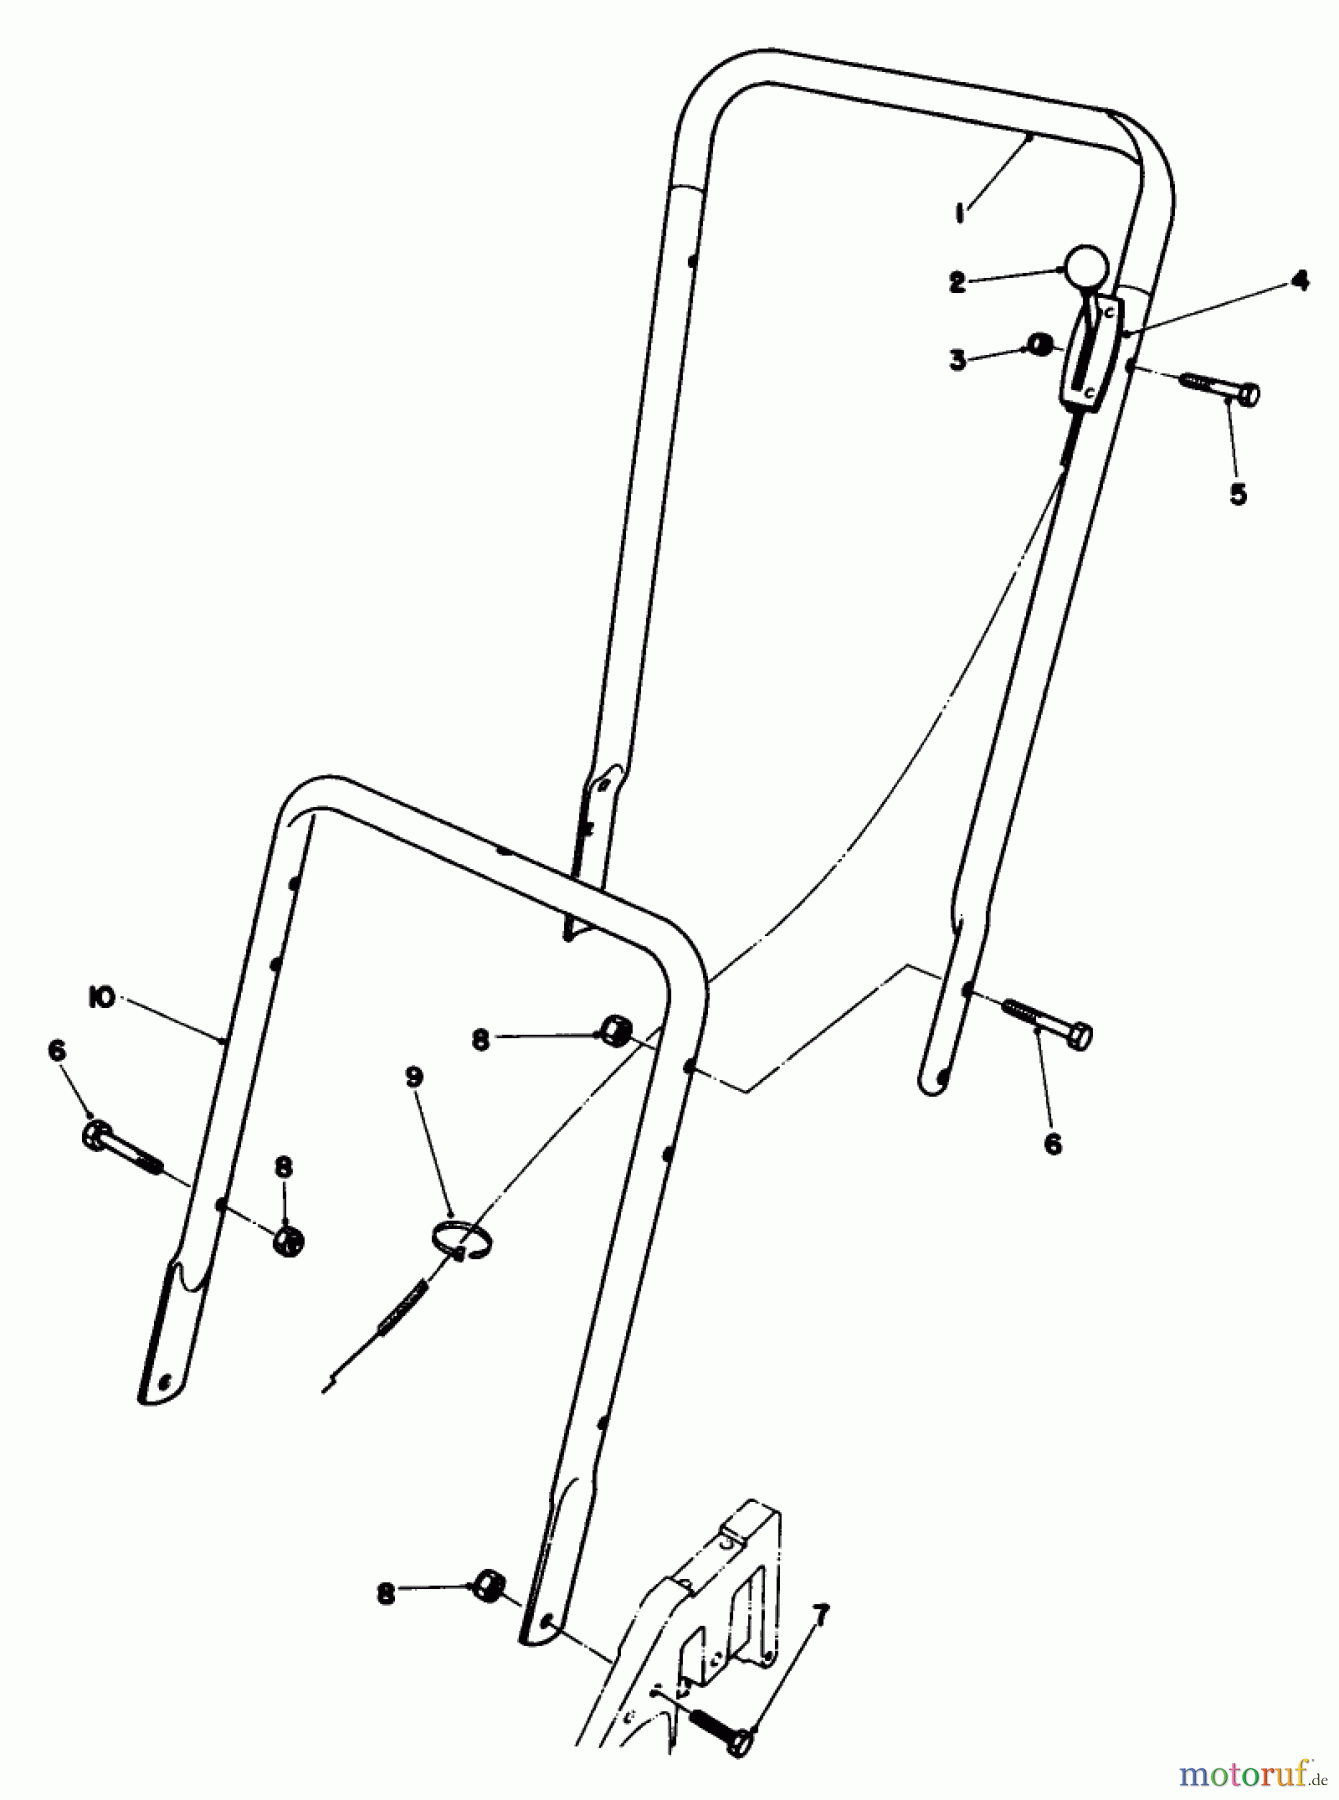  Toro Neu Mowers, Walk-Behind Seite 2 22510 - Toro Lawnmower, 1987 (7000001-7999999) HANDLE ASSEMBLY